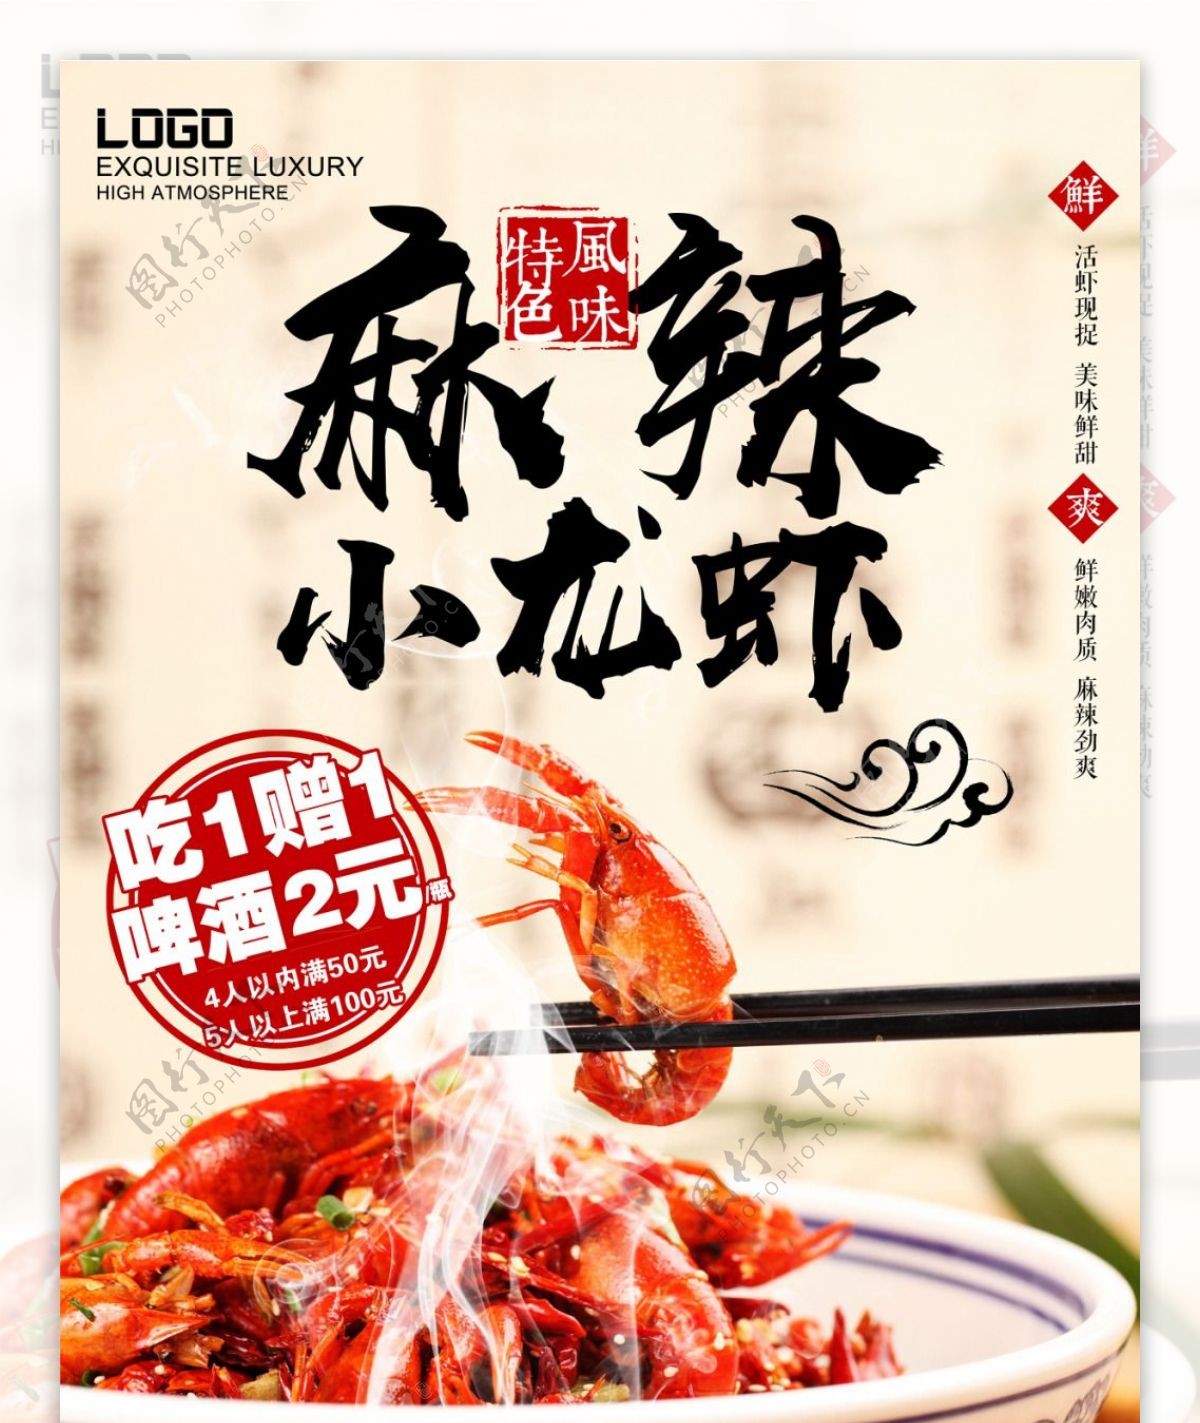 夏季美食麻辣小龙虾海报设计